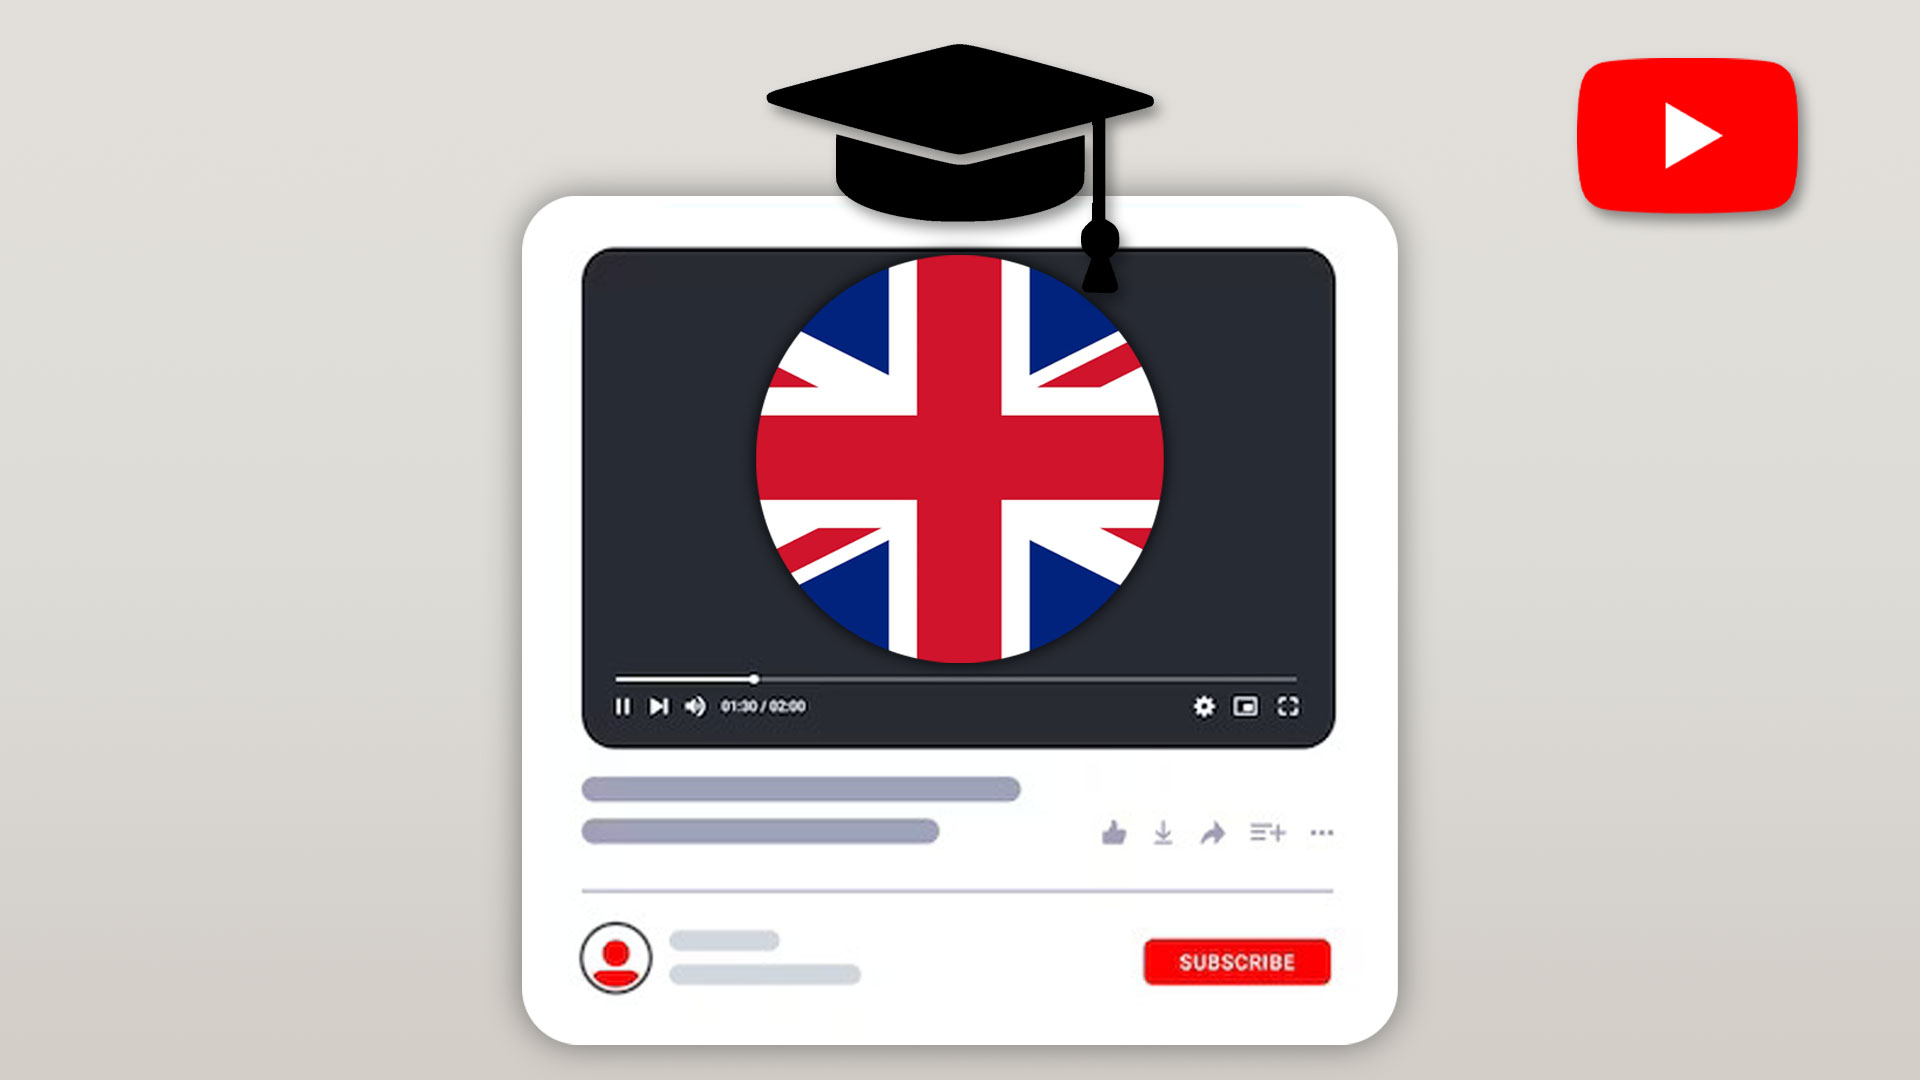 یادگیری زبان انگلیسی با یوتیوب